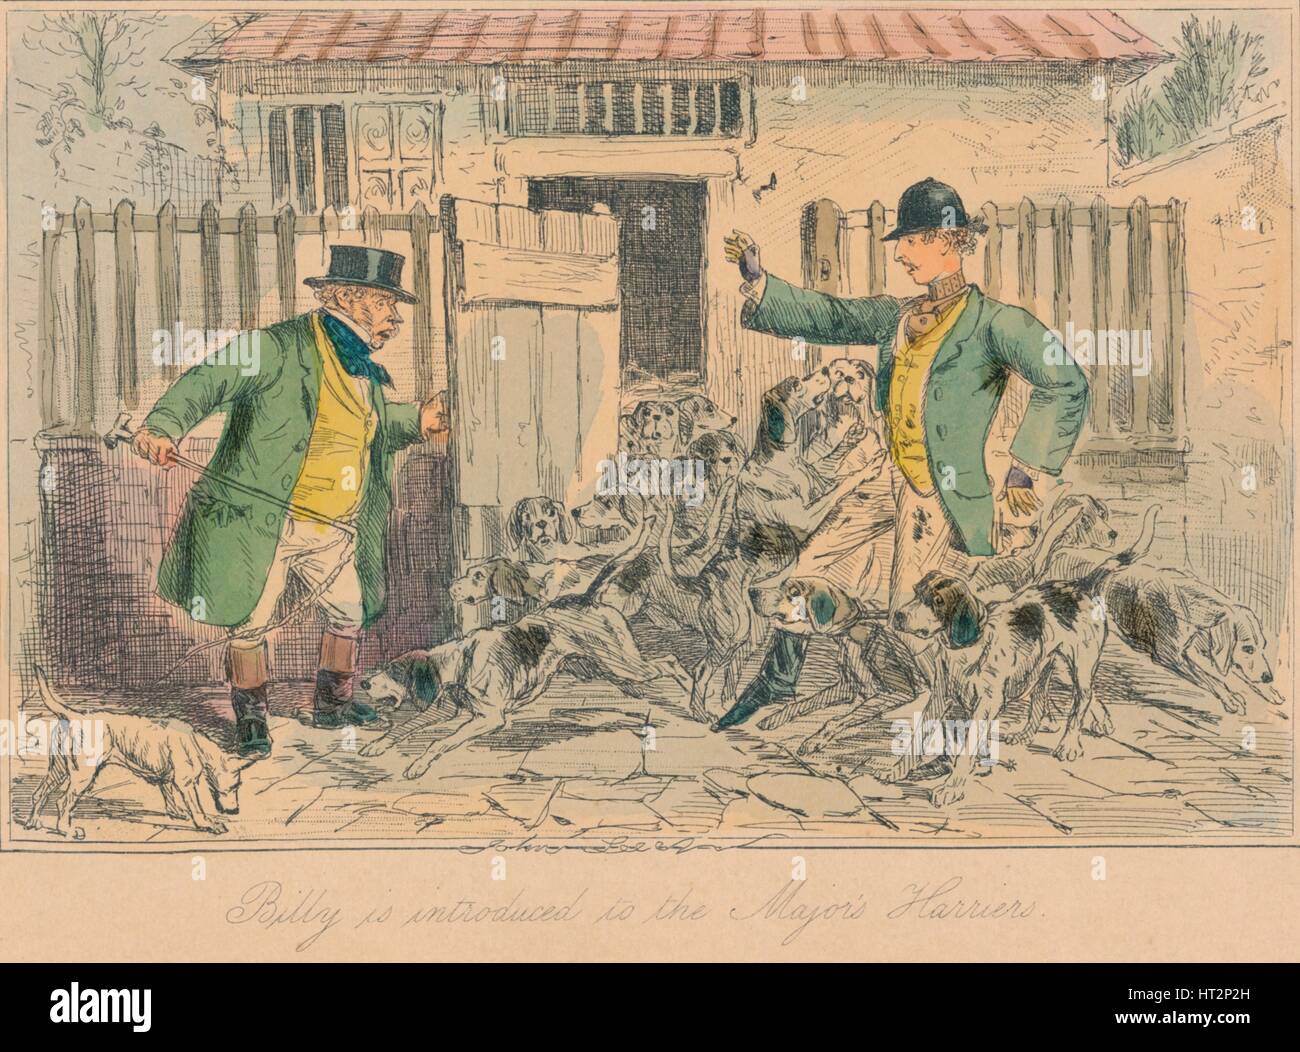 "Billy wird eingeführt, um die großen weihen", 1858. Künstler: John Leech. Stockfoto